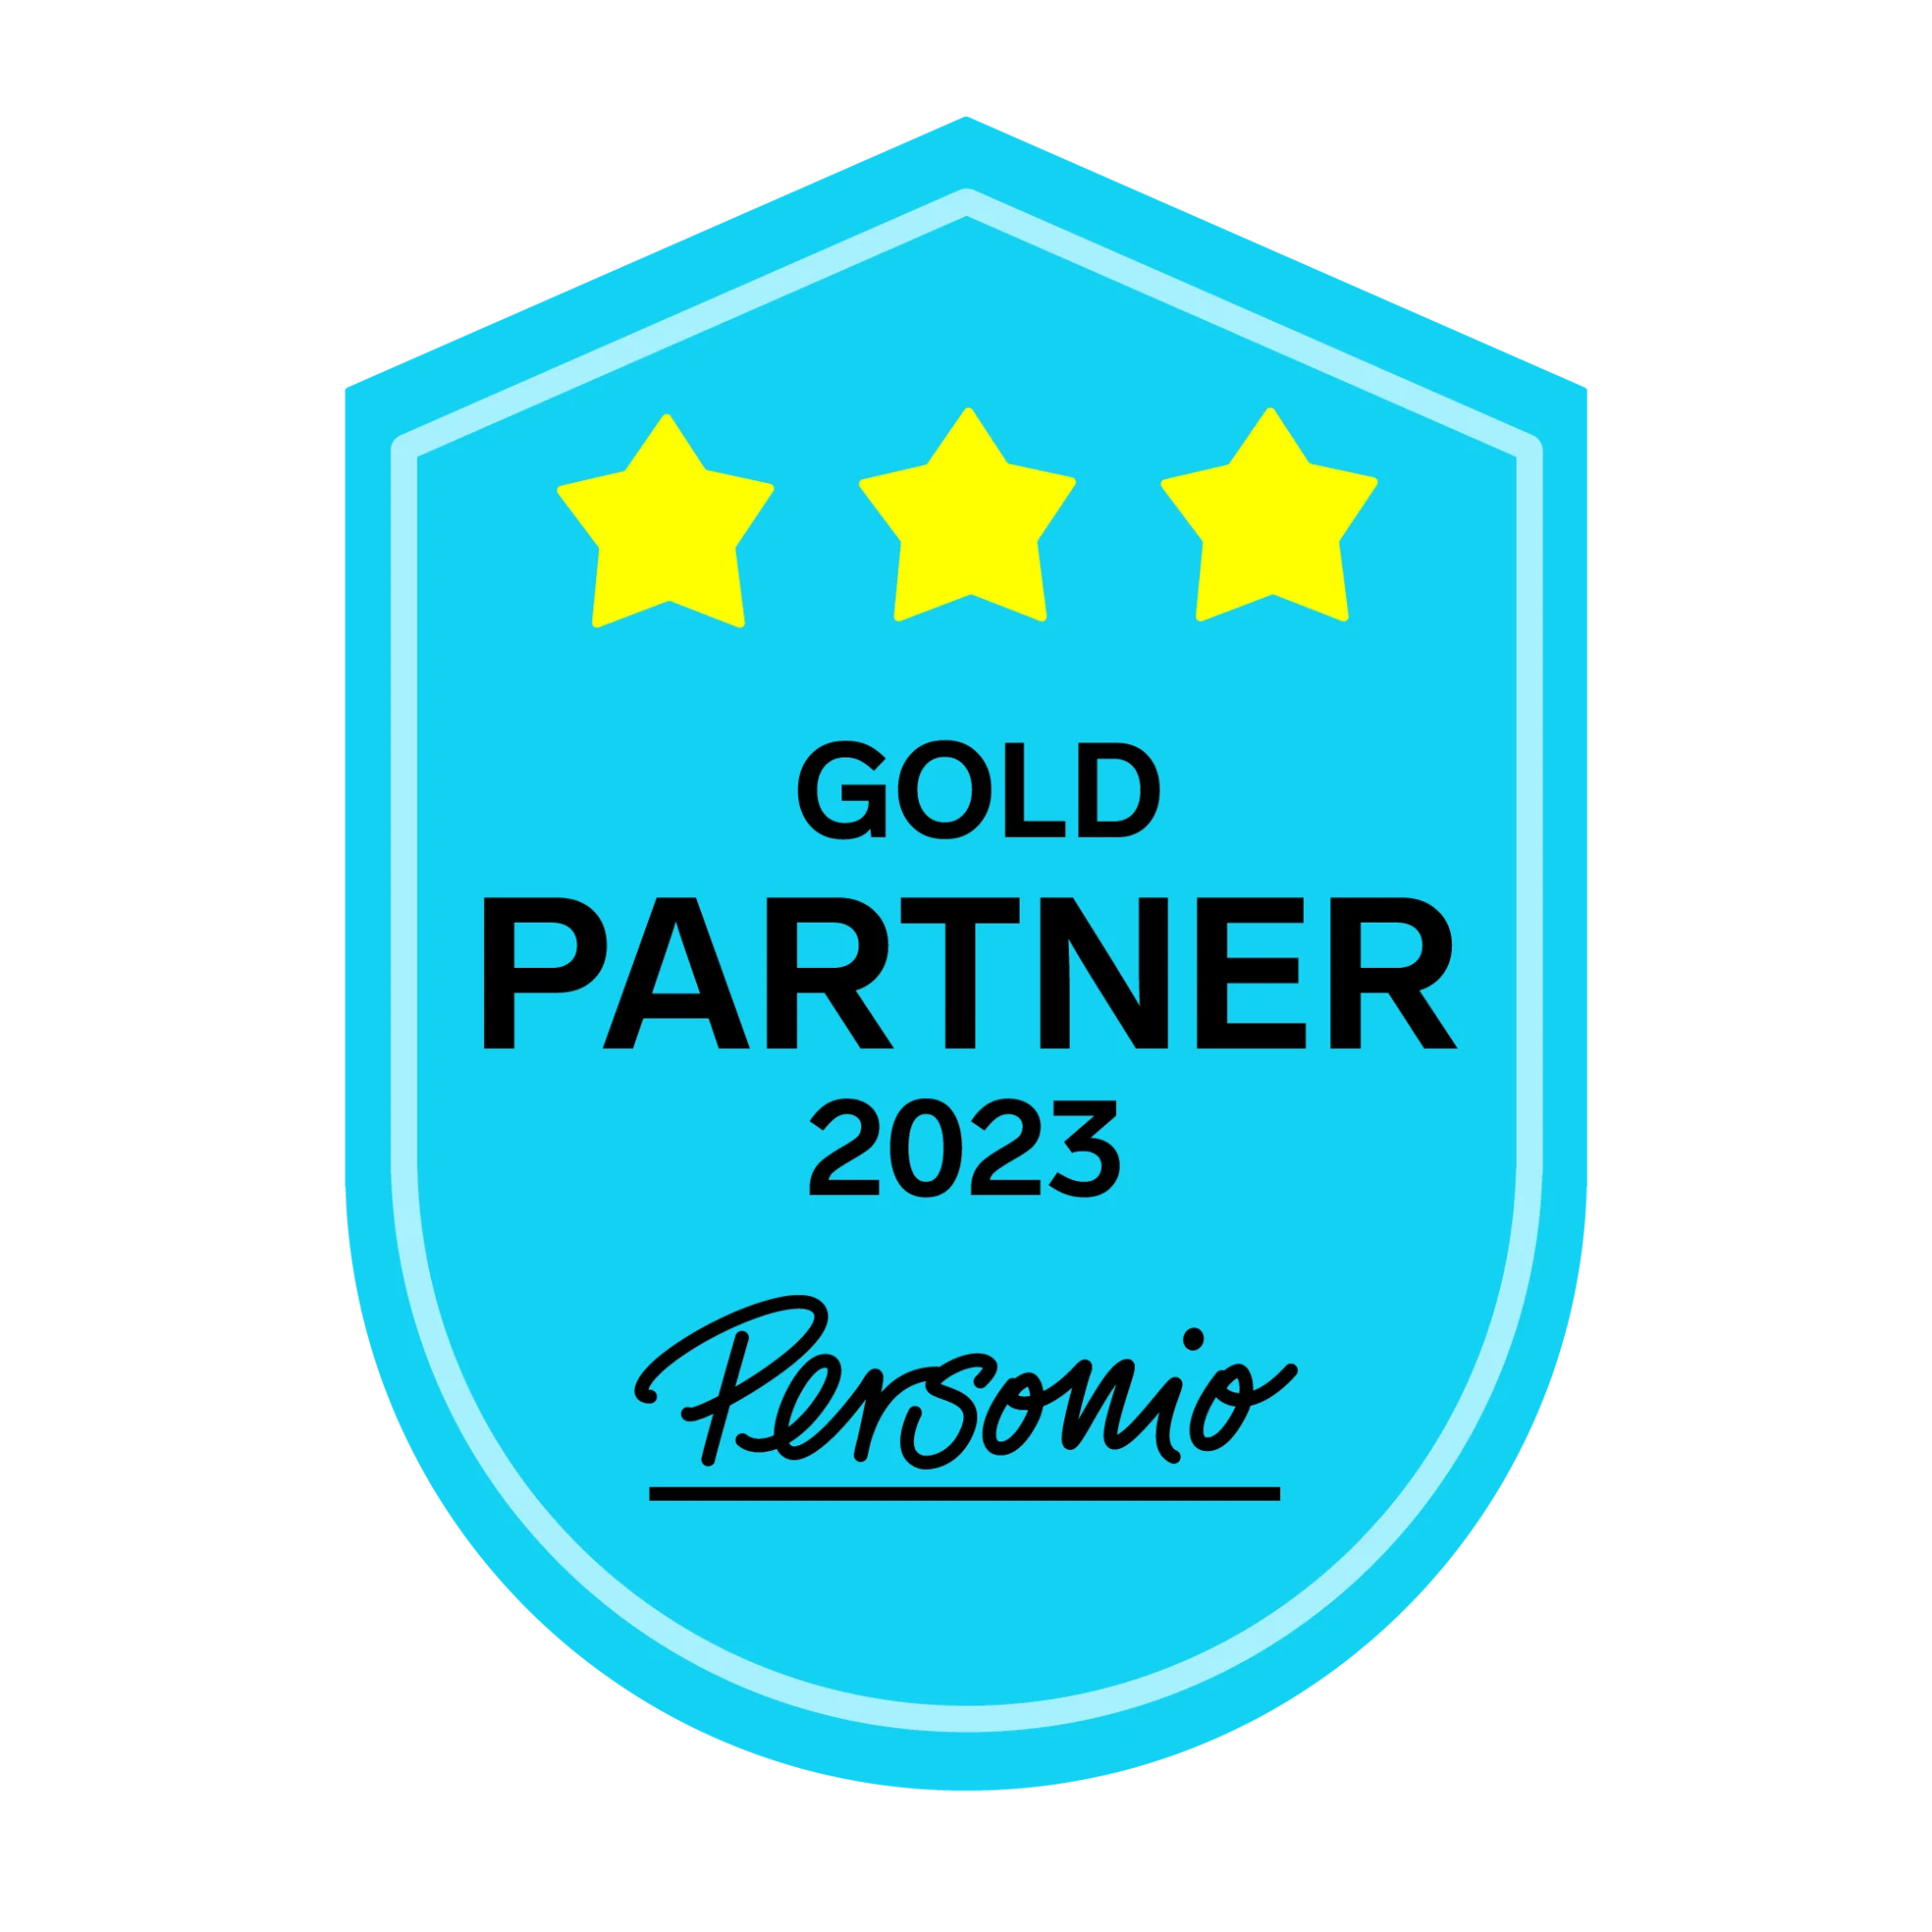 Personio Gold Partner 2023